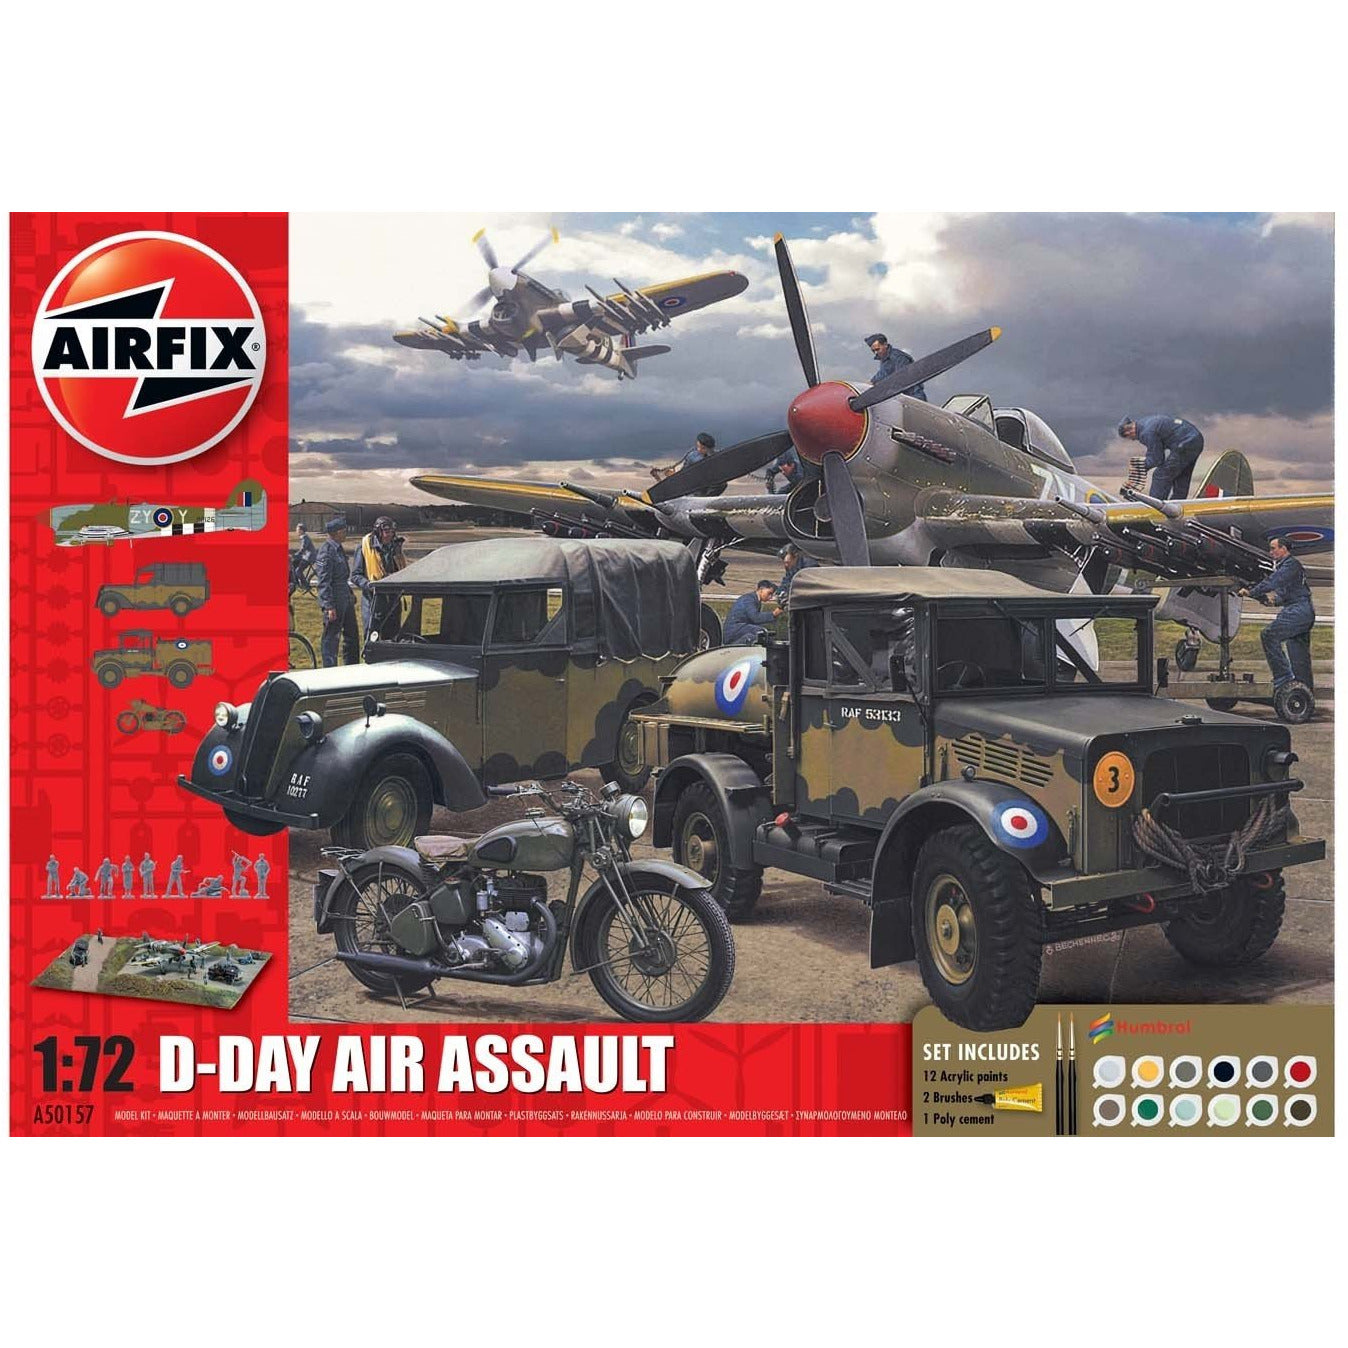 D-Day Air Assault Gift Set 1/72 by Airfix